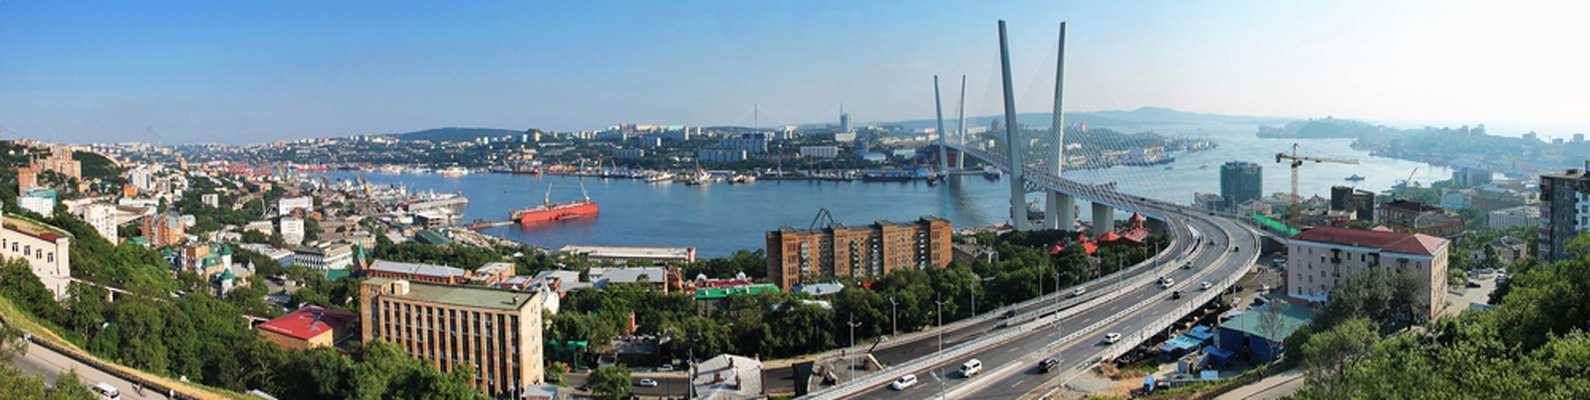 Город владивосток - достопримечательности, история, карта города, фото